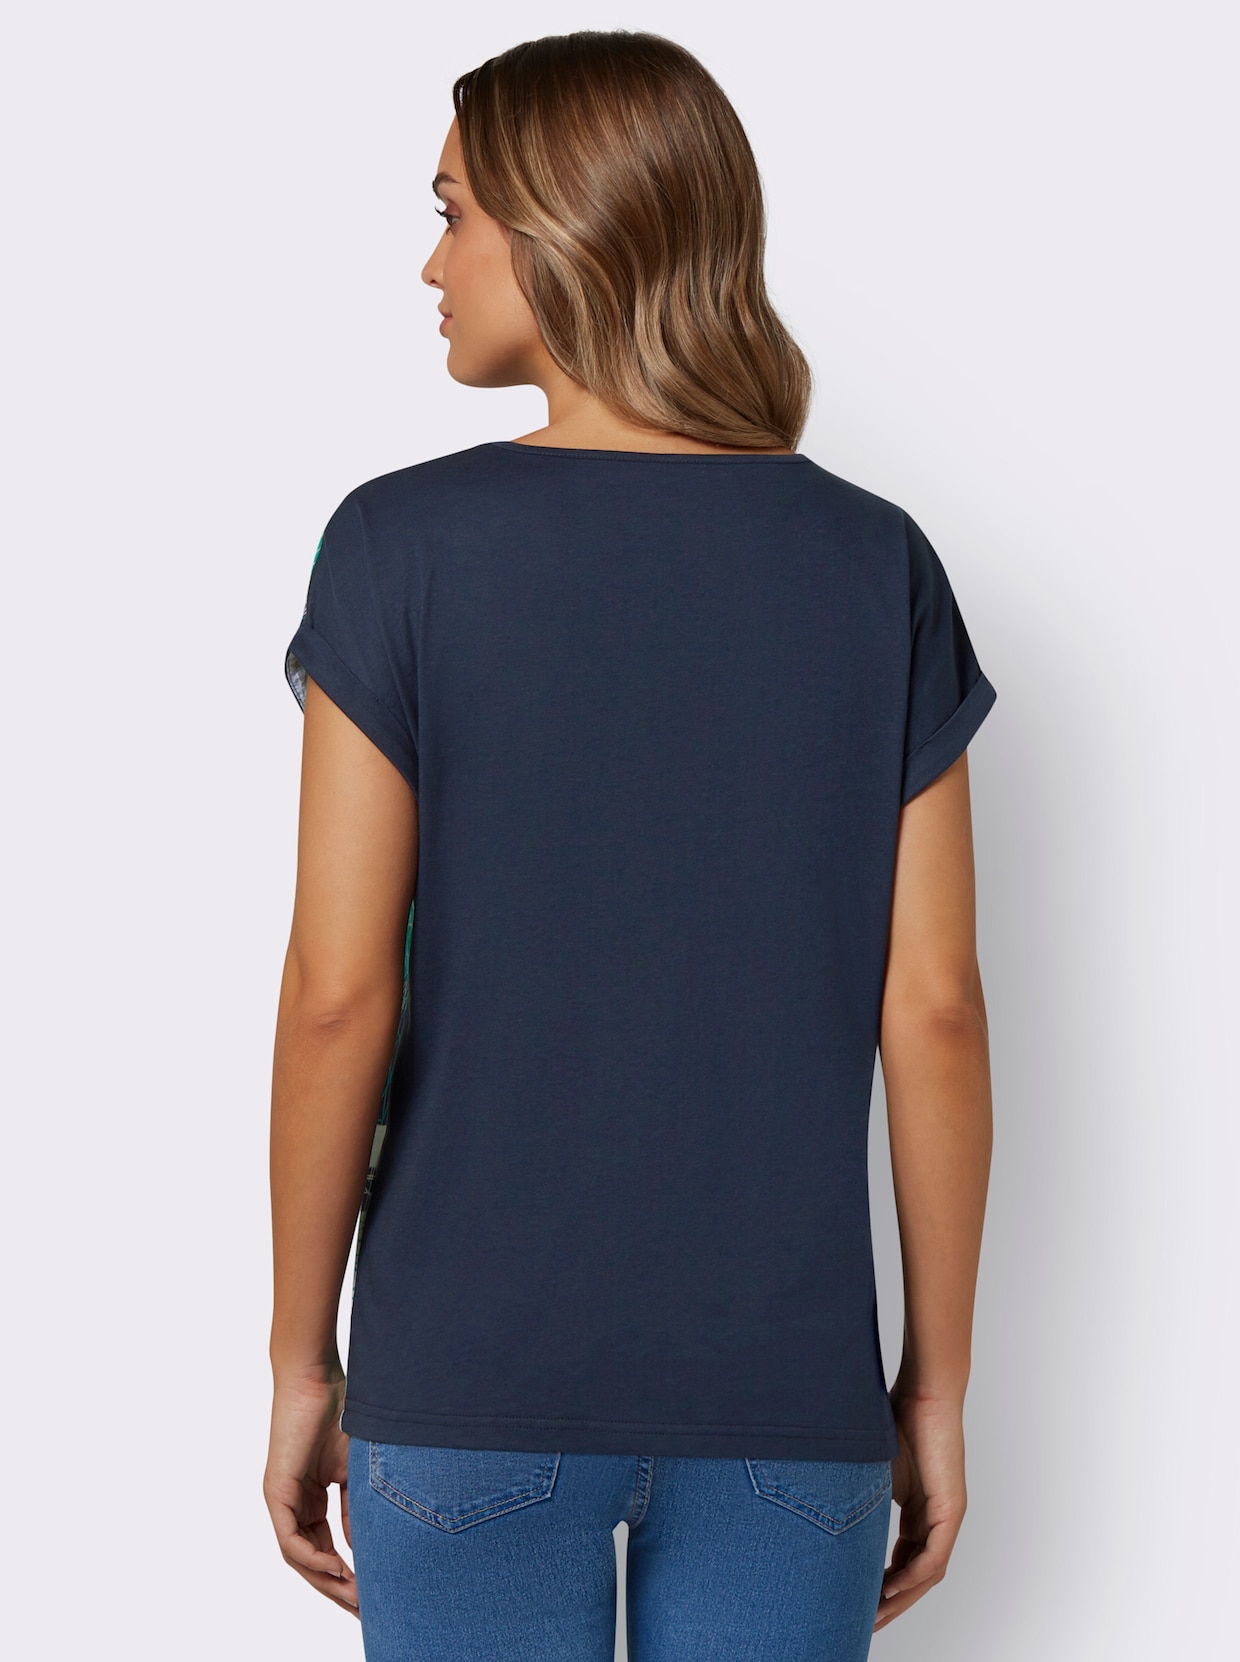 Kurzarm-Shirt - mint-nachtblau-bedruckt